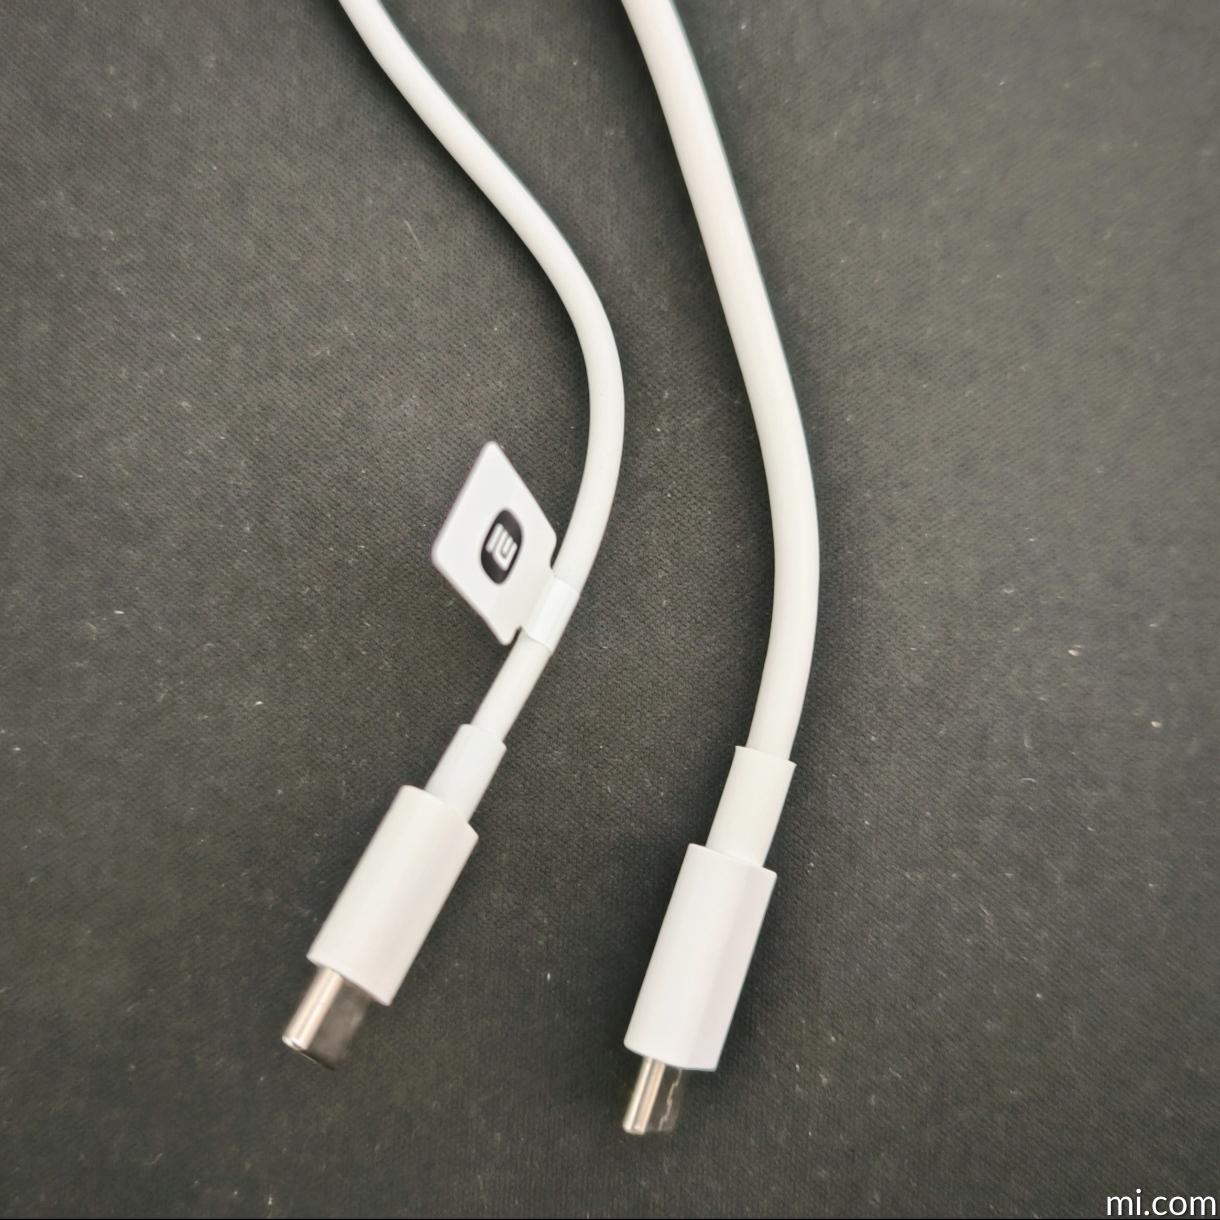 mi-usb-type-c-cable-1m - Caractéristiques - Xiaomi France